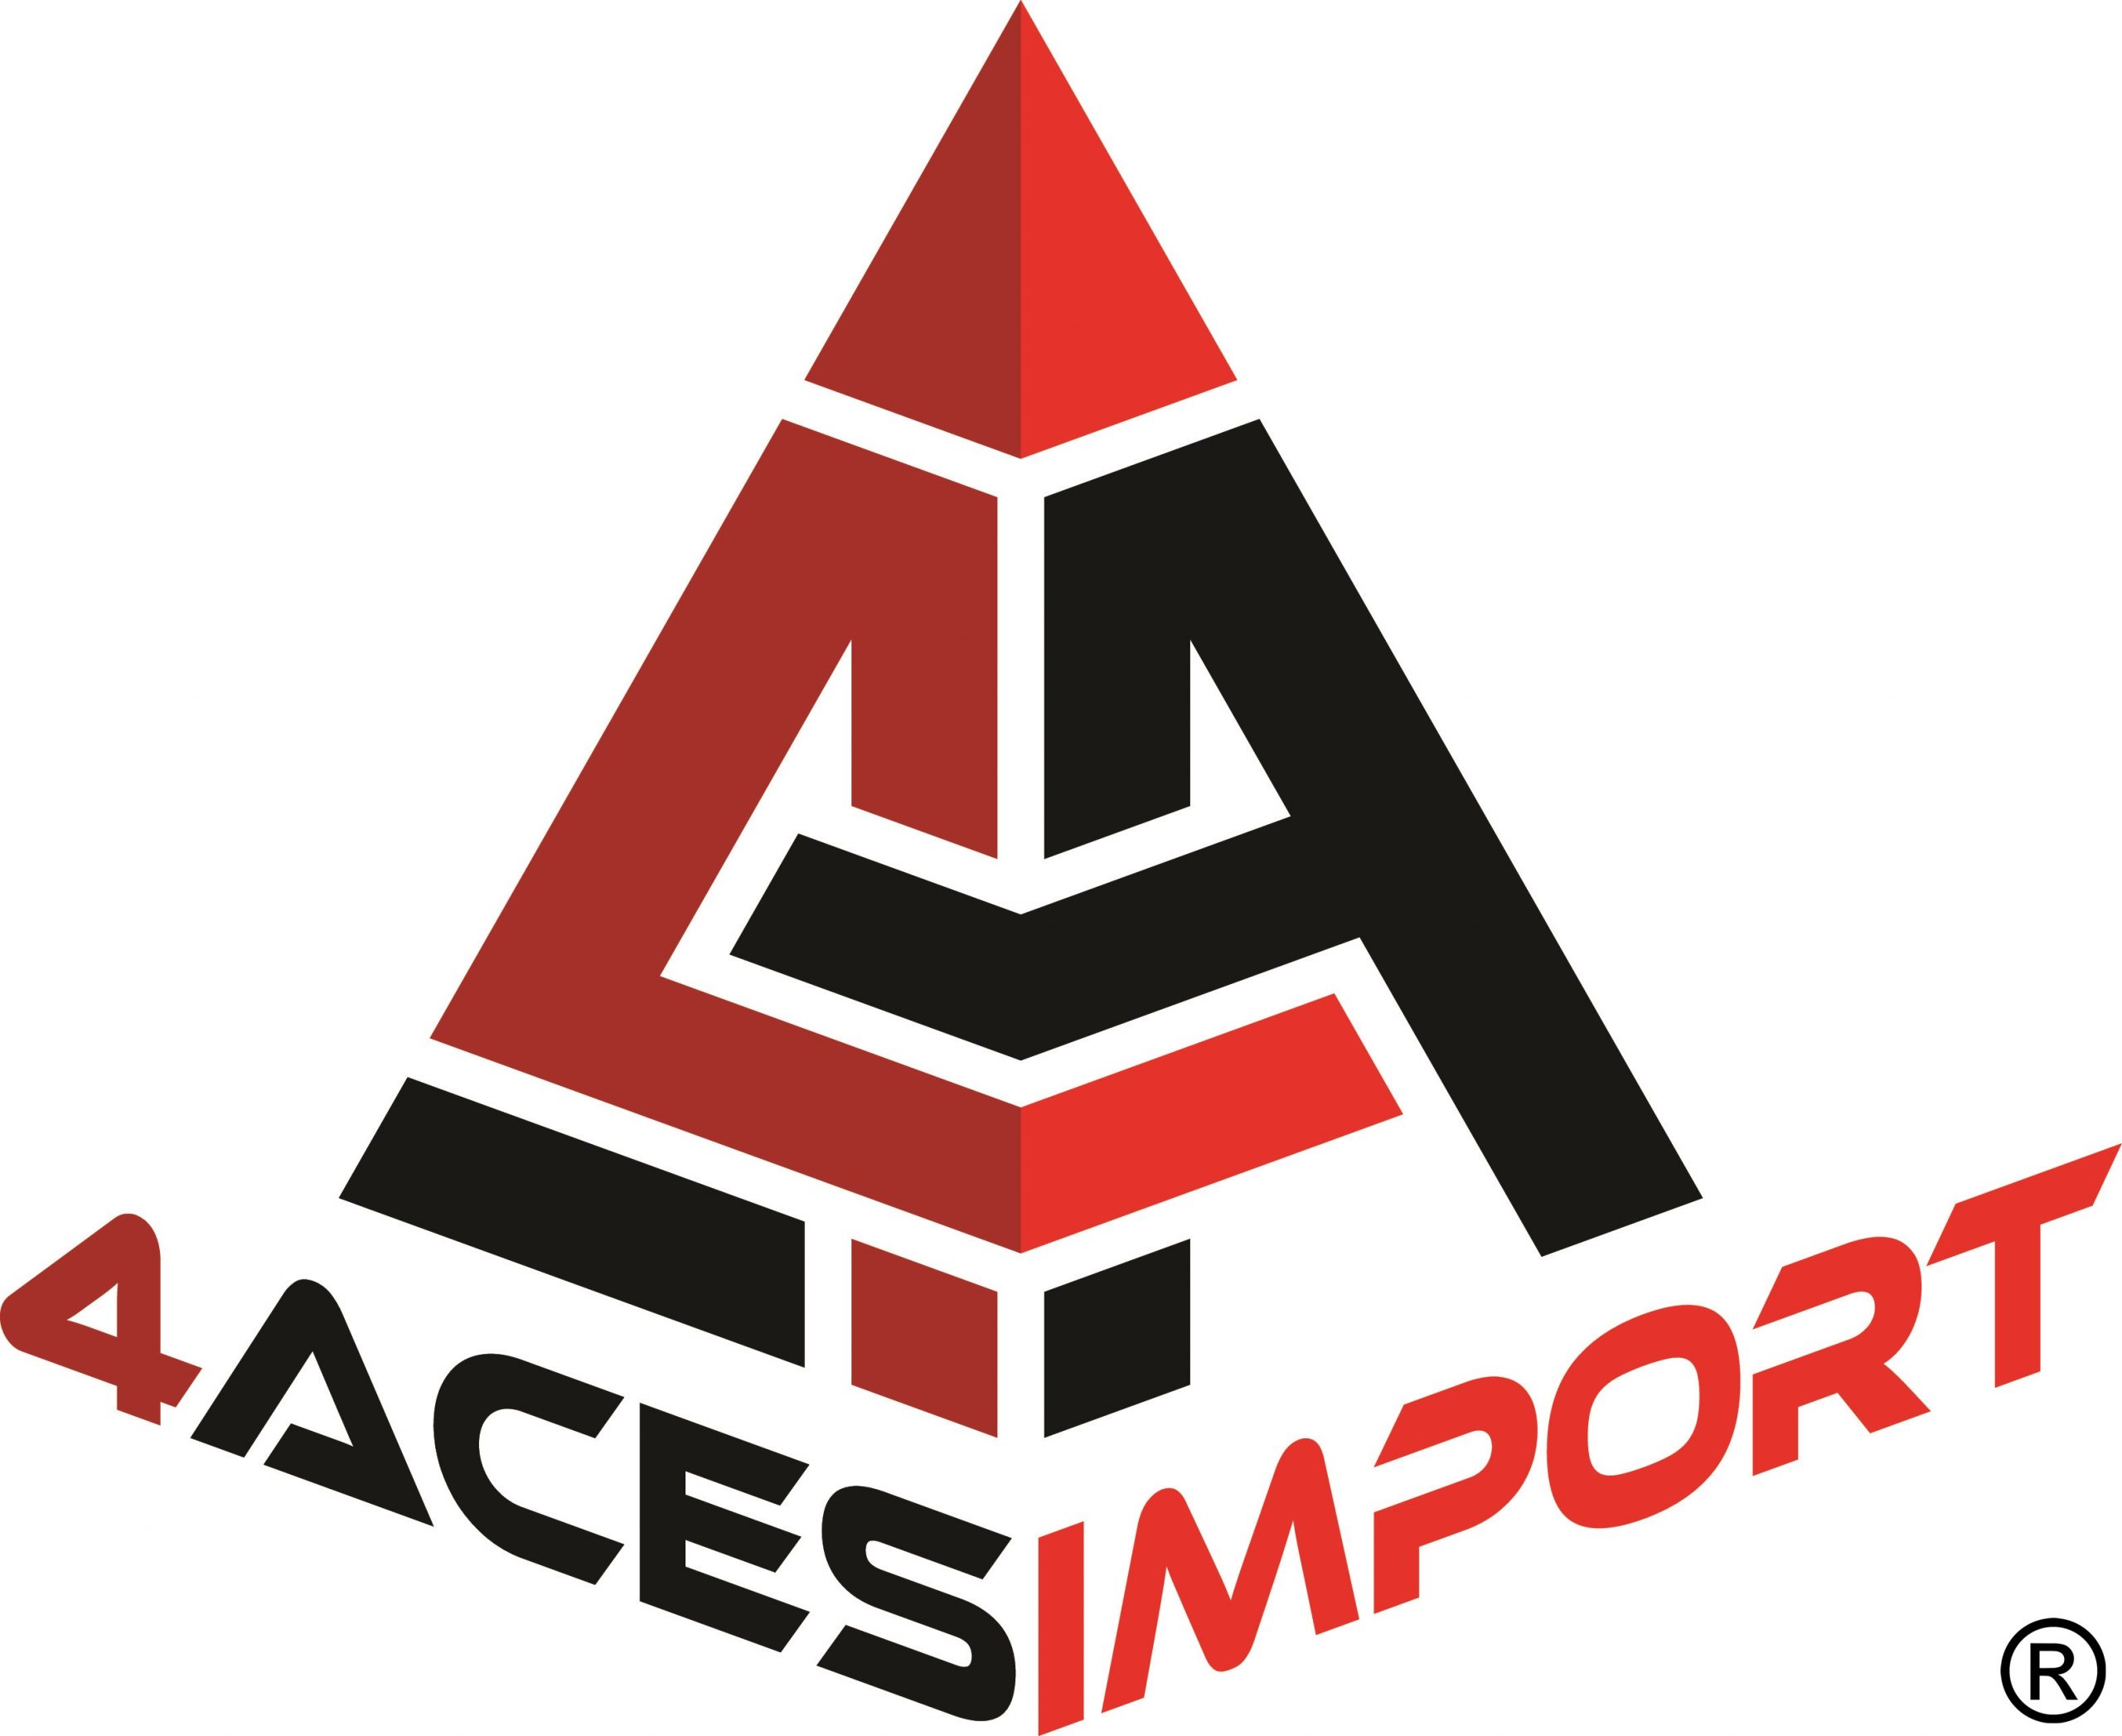 4 Aces Import